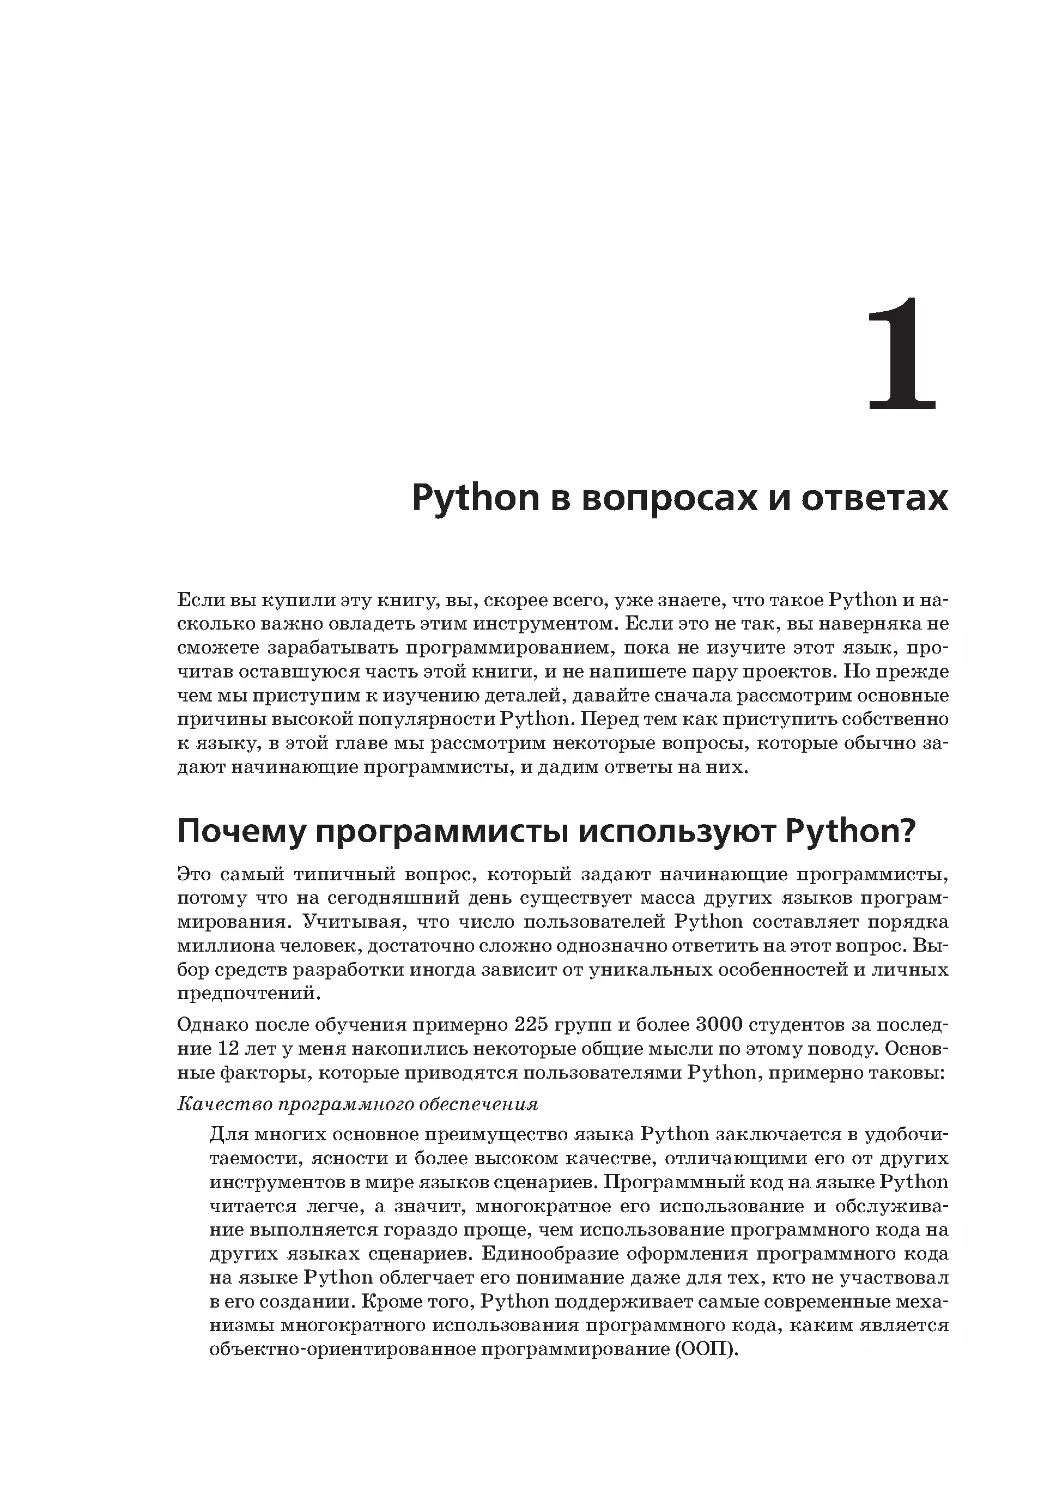 Глава 1.
Почему программисты используют Python?